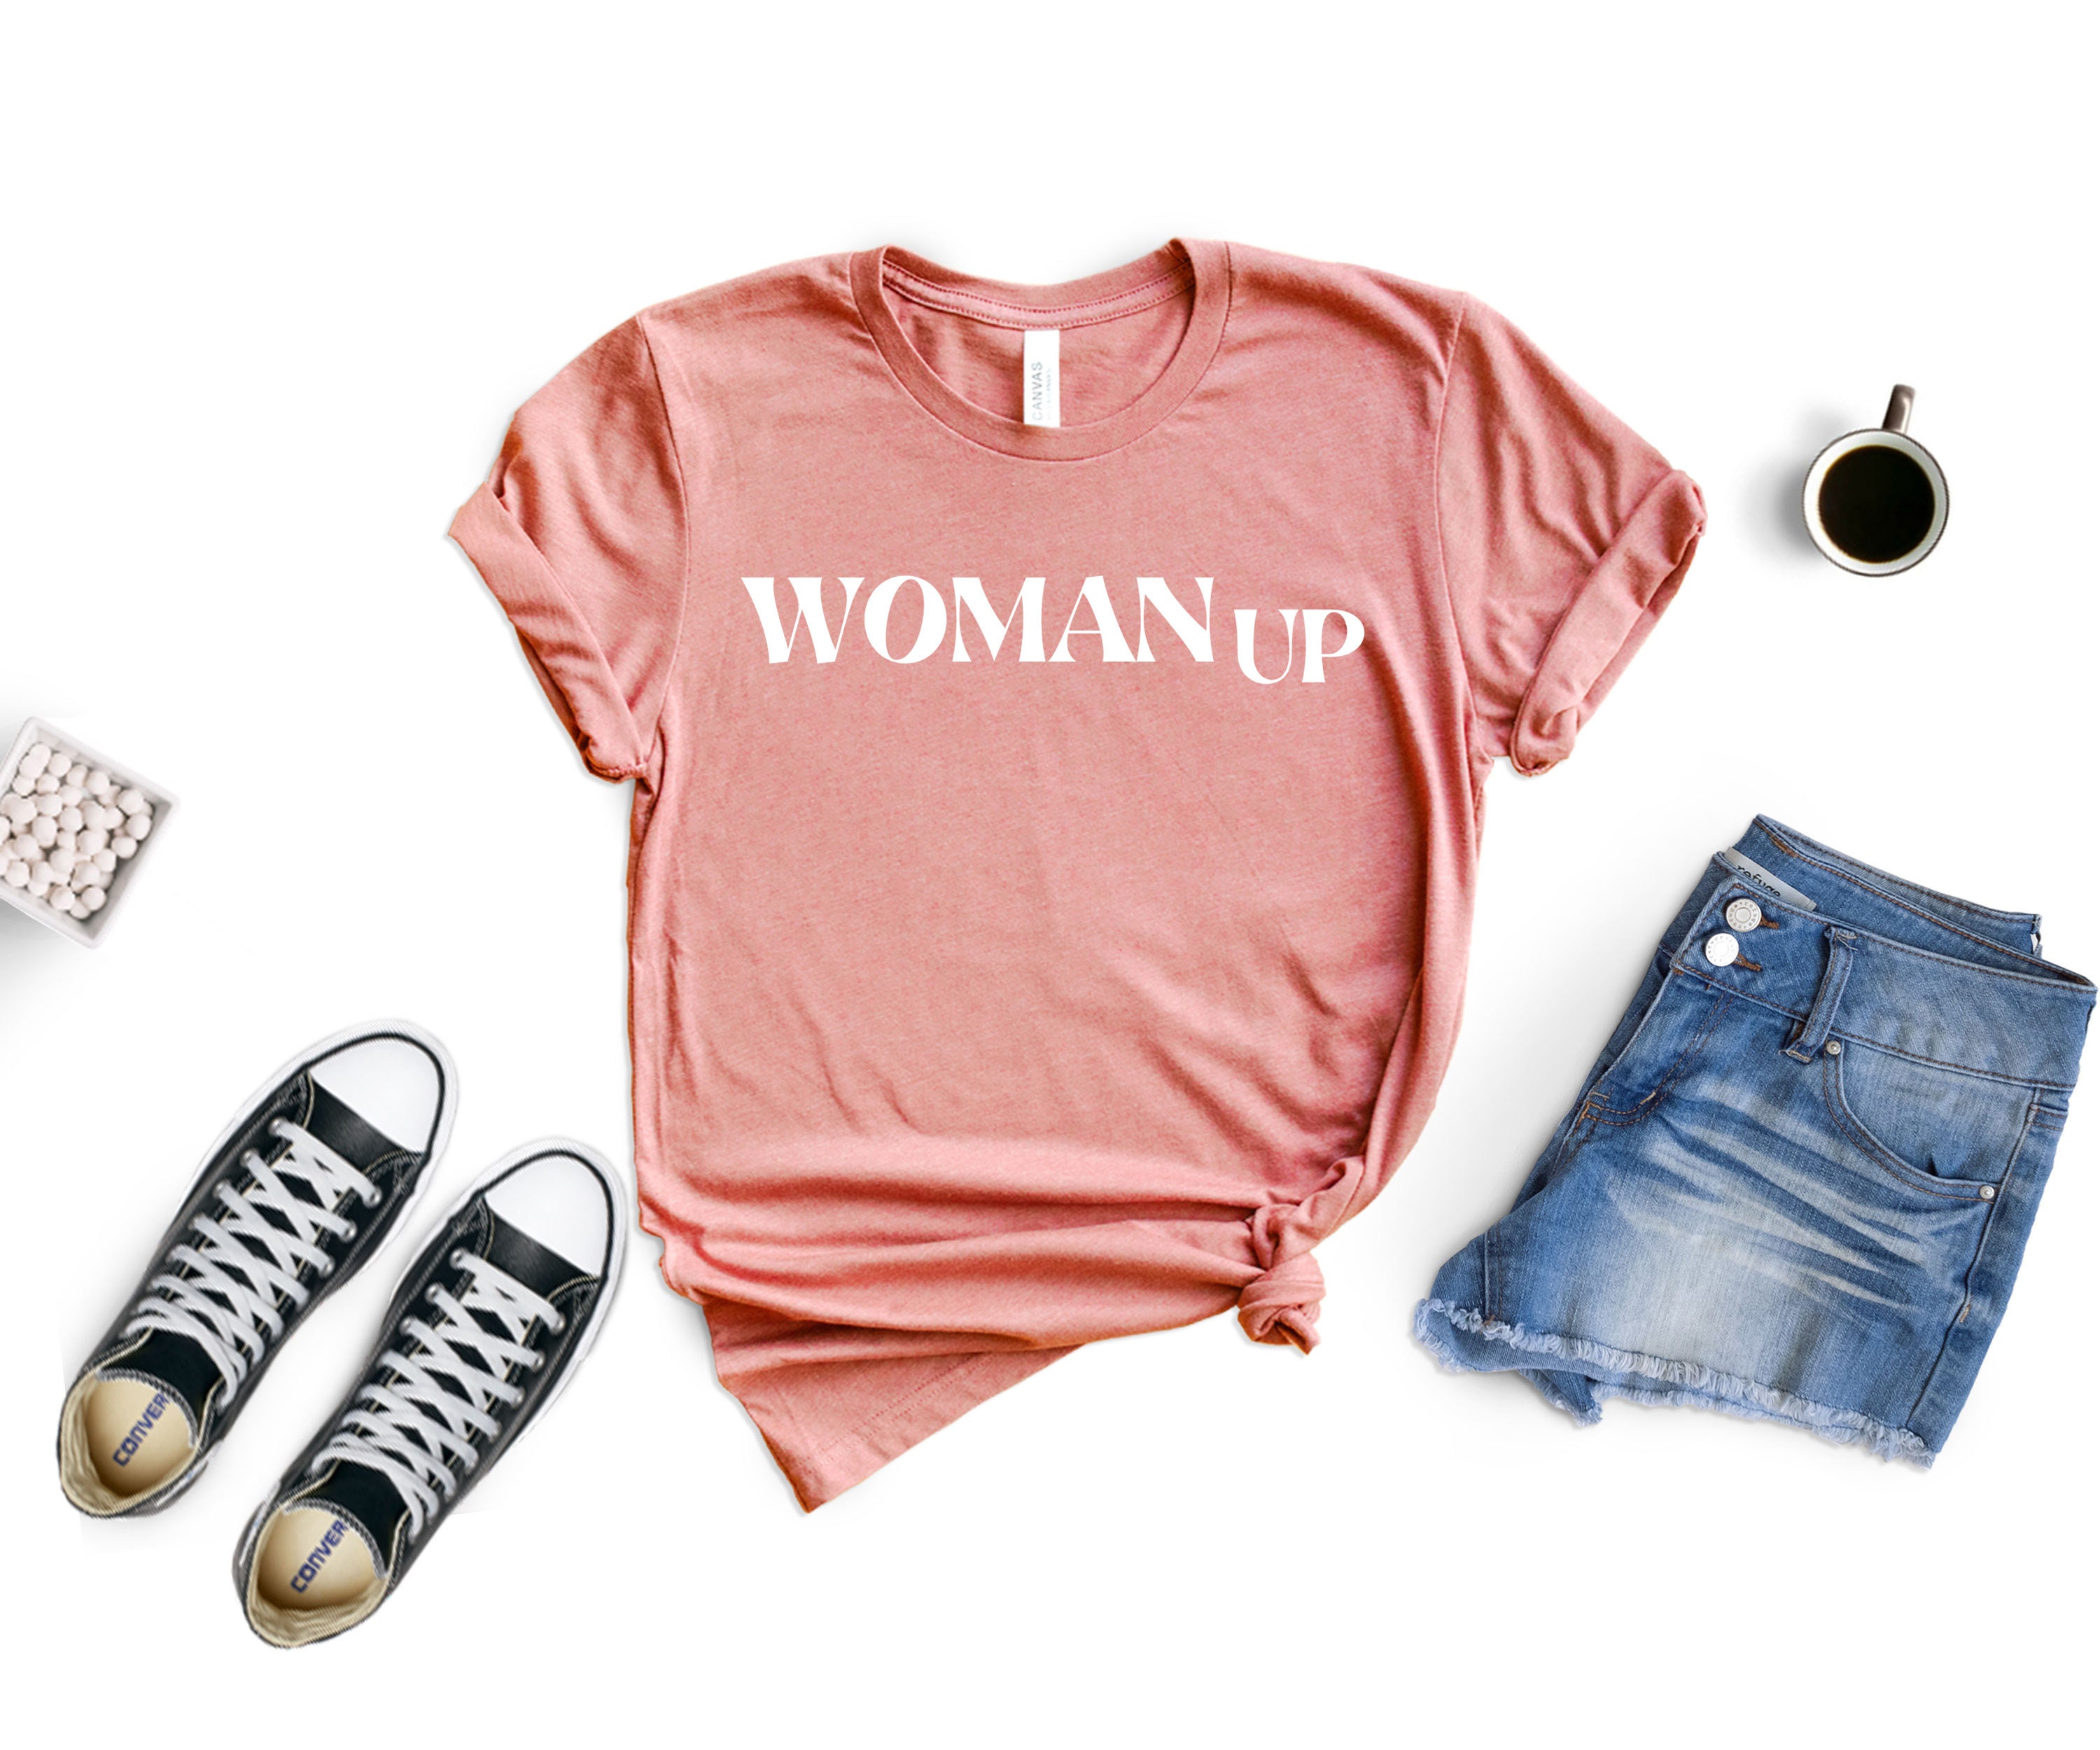 Discover Woman Up Shirt, Feminist Tshirt, Girl Power Shirt, Women Empowerment Tshirt, Women's Power Shirt, Motivational Shirt, Inspirational Tee